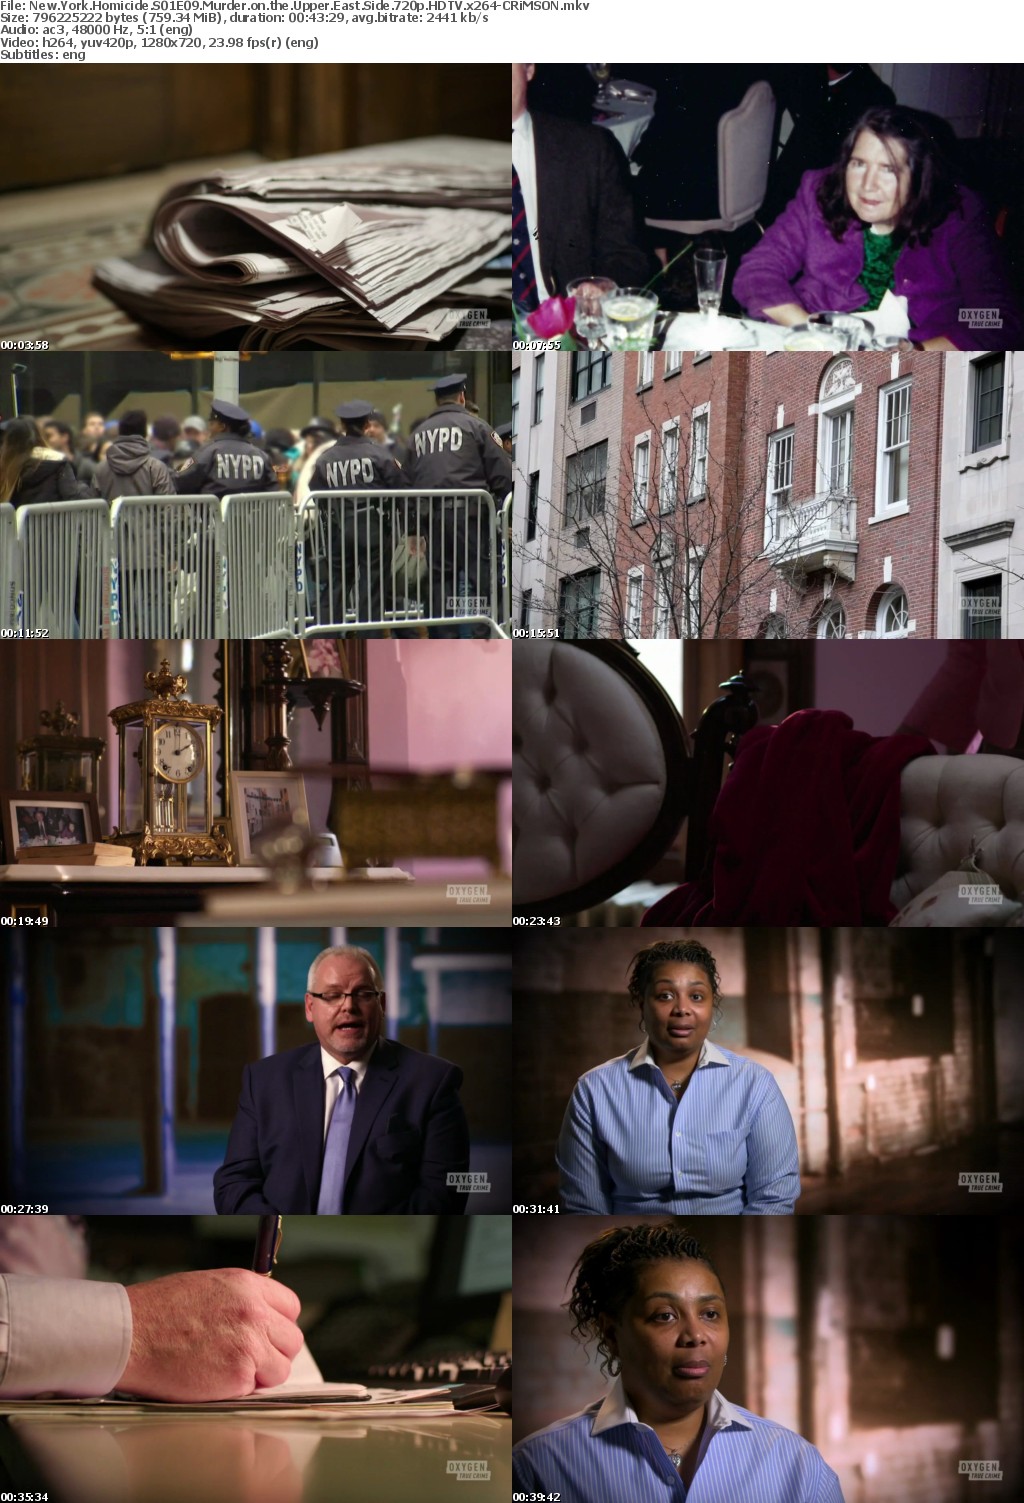 New York Homicide S01E09 Murder on the Upper East Side 720p HDTV x264-CRiMSON